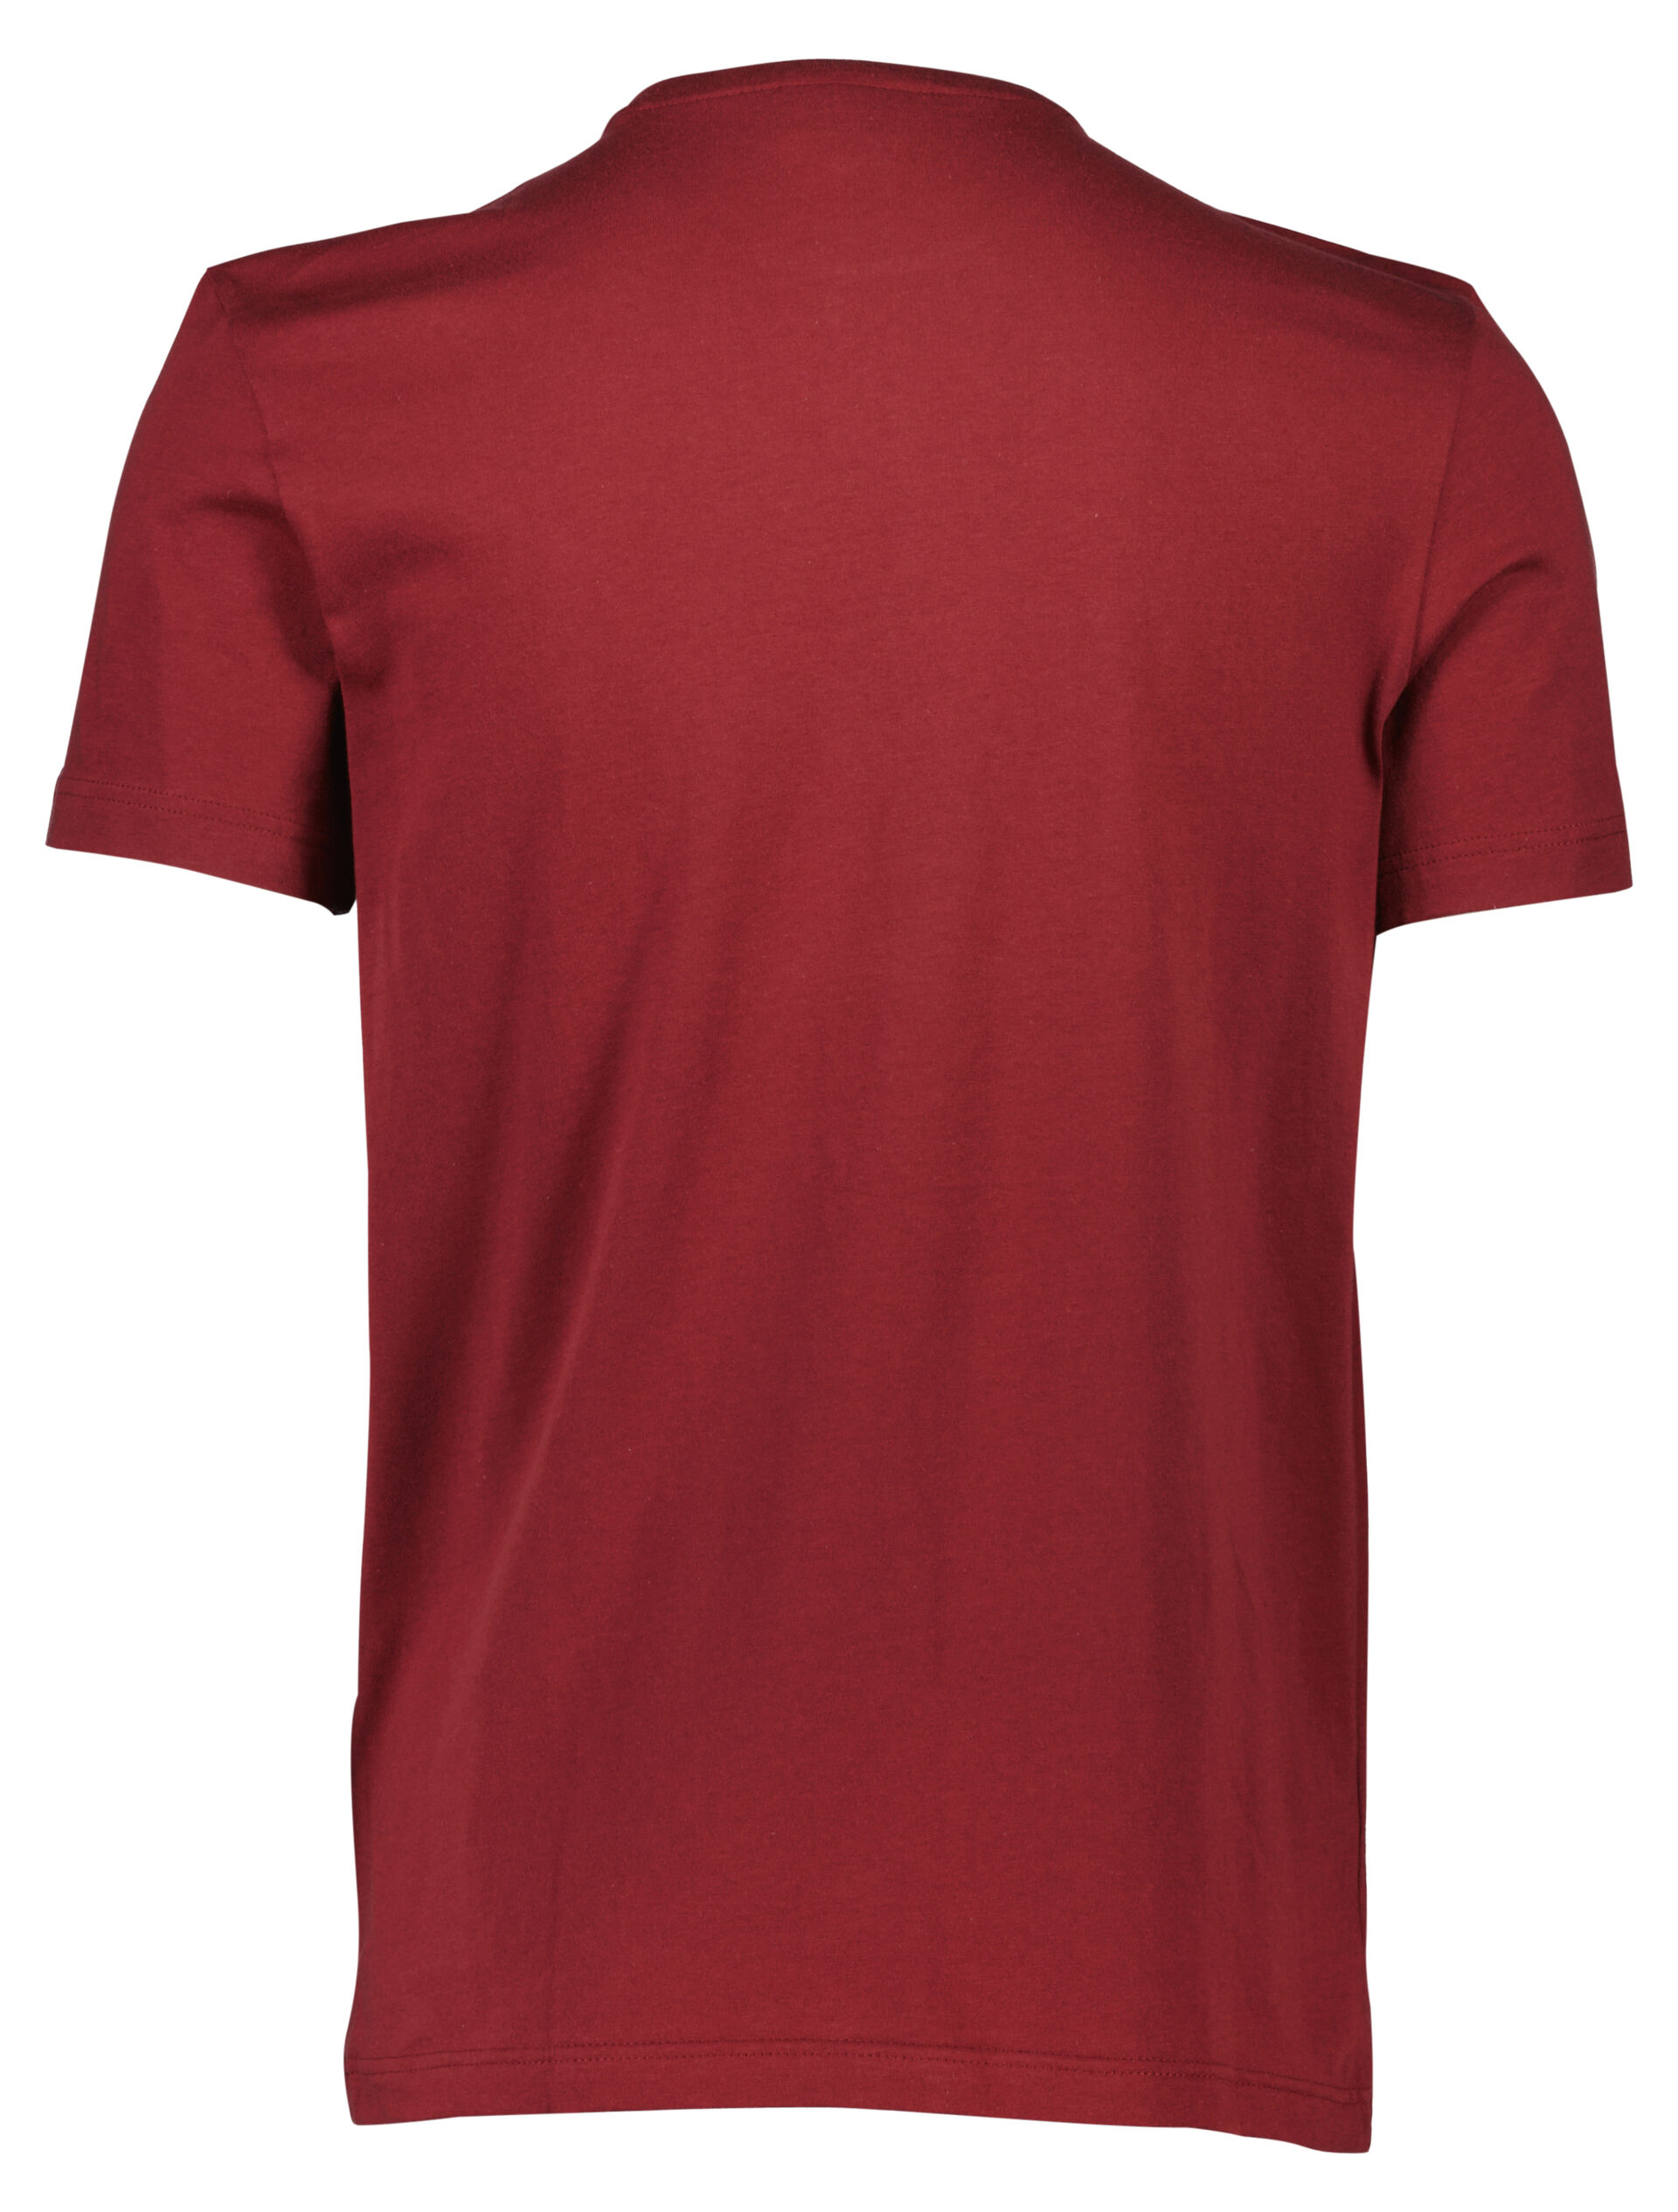 Lacoste  T-shirt 90-400662